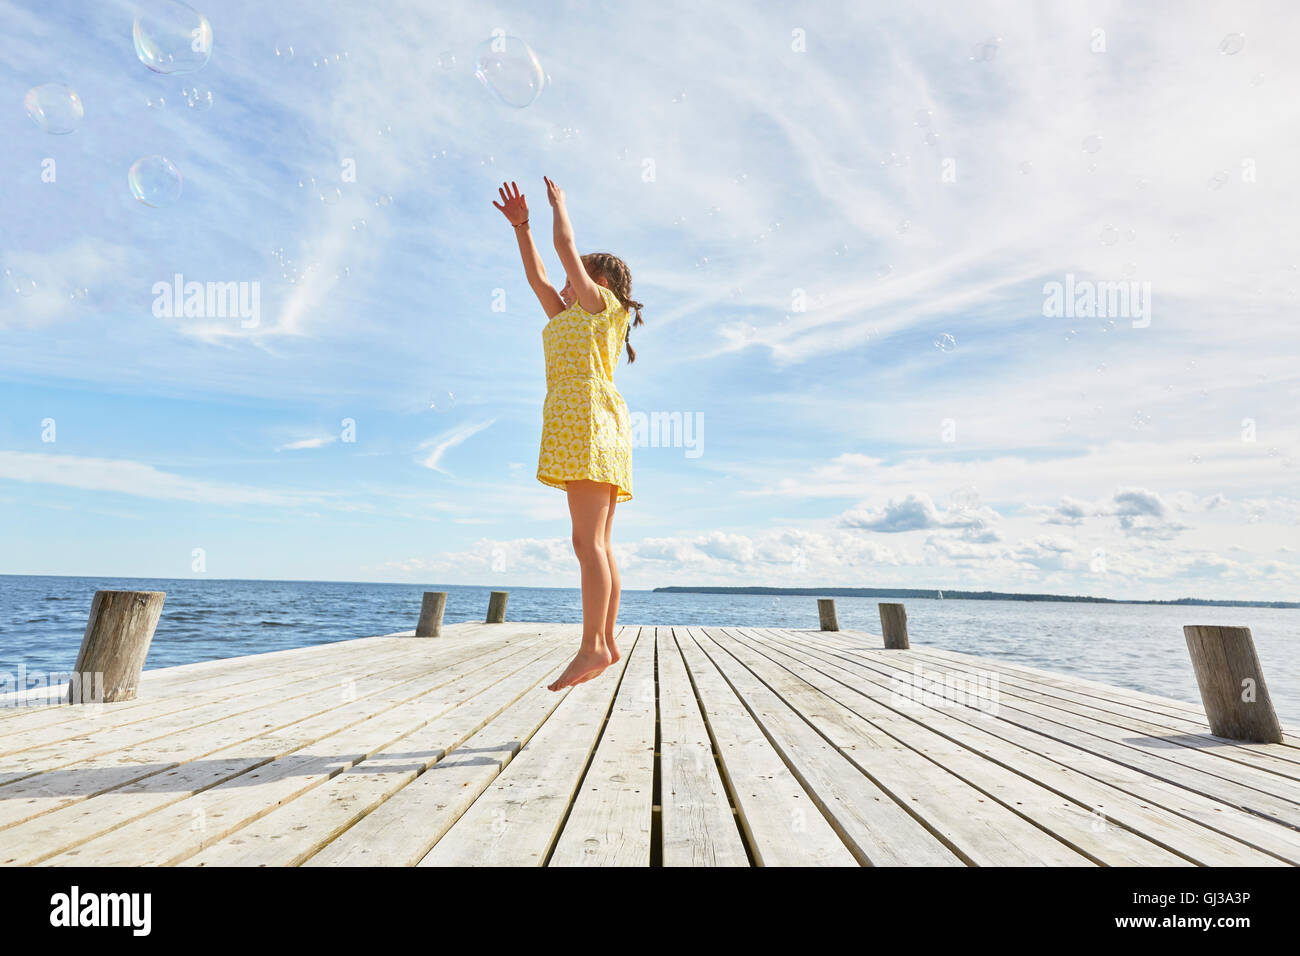 Giovane ragazza sul molo in legno, saltando per raggiungere le bolle Foto Stock